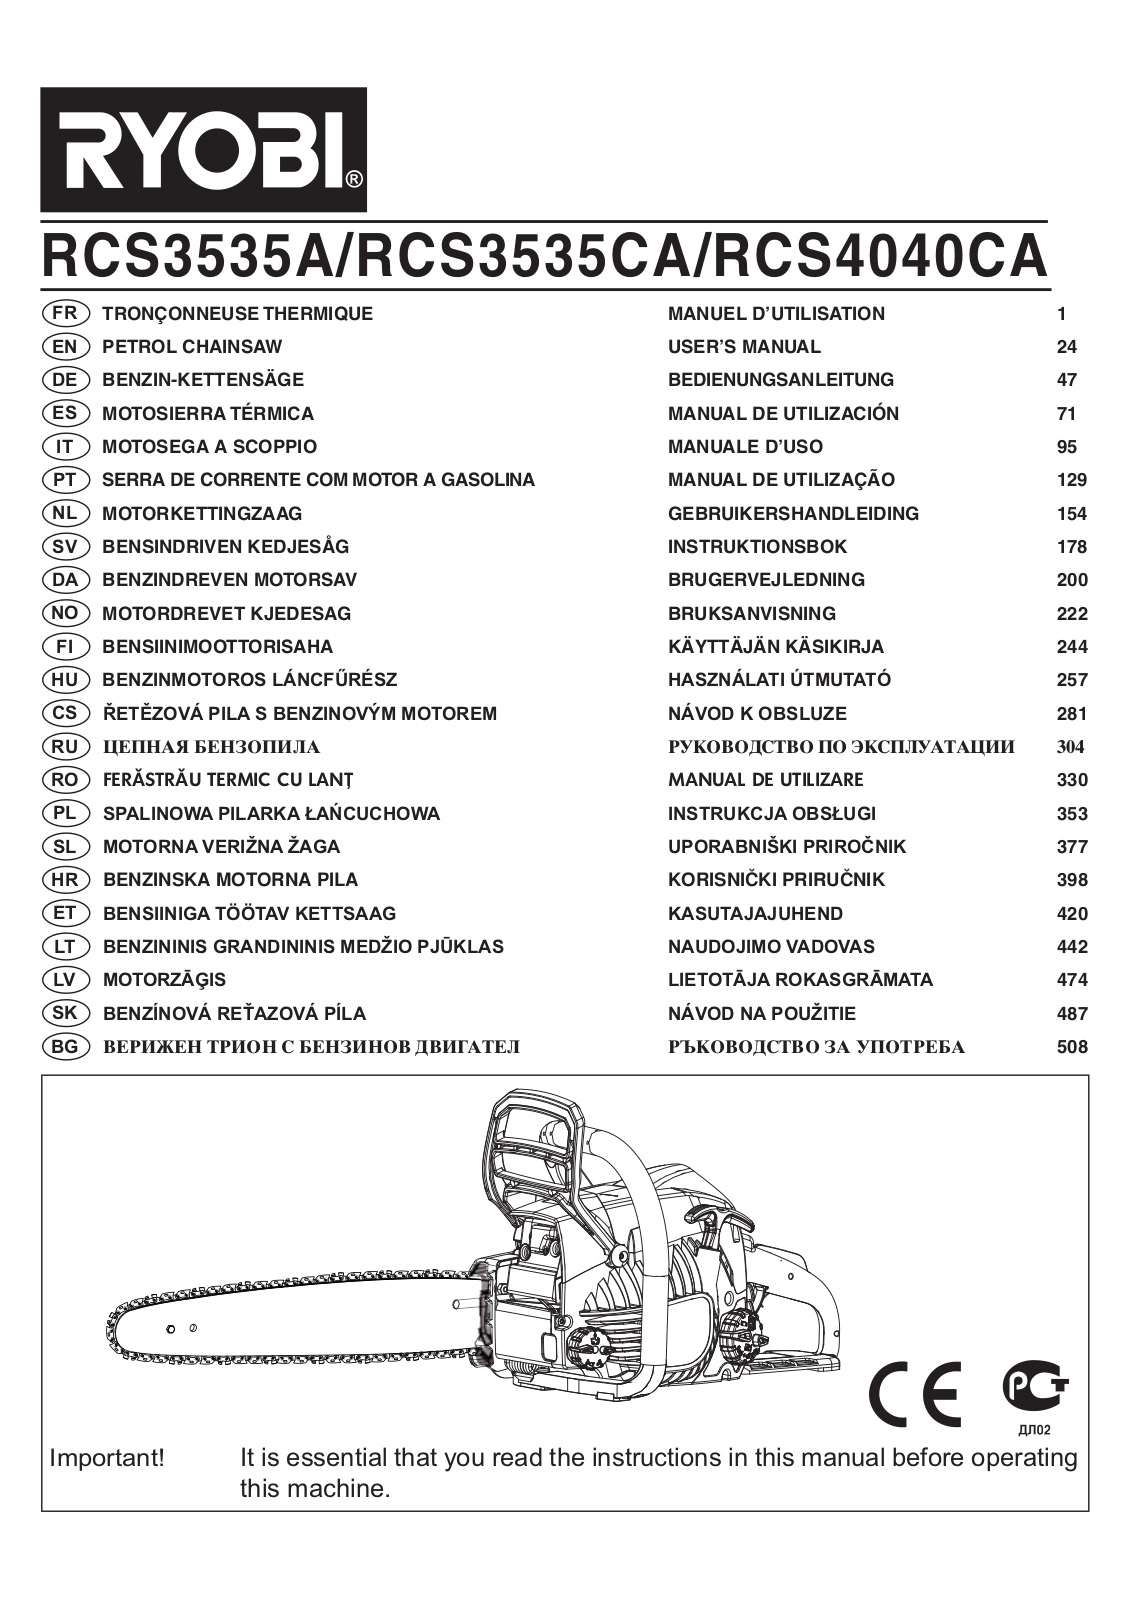 RYOBI RCS3535A, RCS3535CA, RCS4040CA User Manual